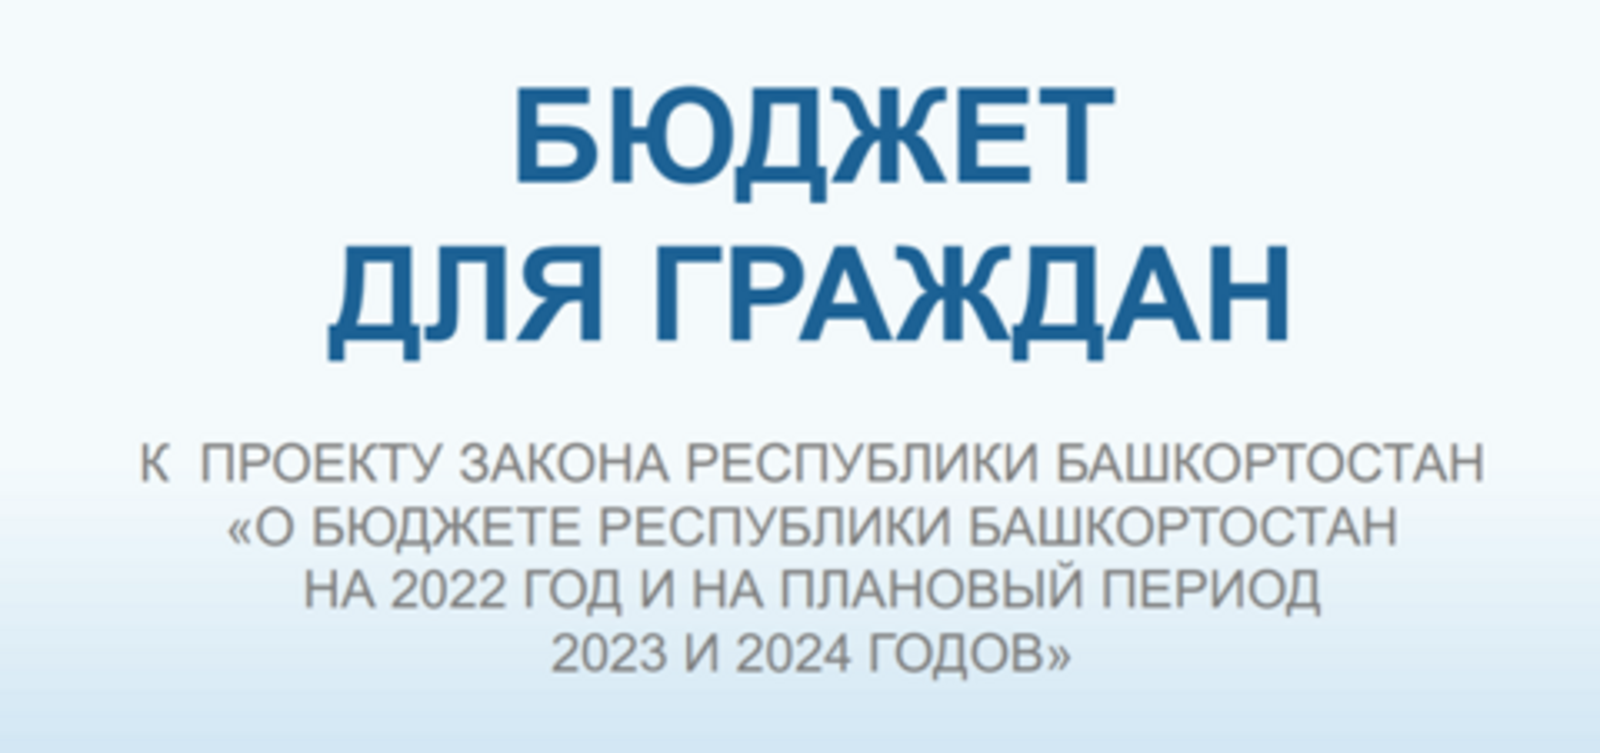 О проекте закона Республики Башкортостан «О бюджете Республики Башкортостан на 2022 год и на плановый период 2023 и 2024 годов»